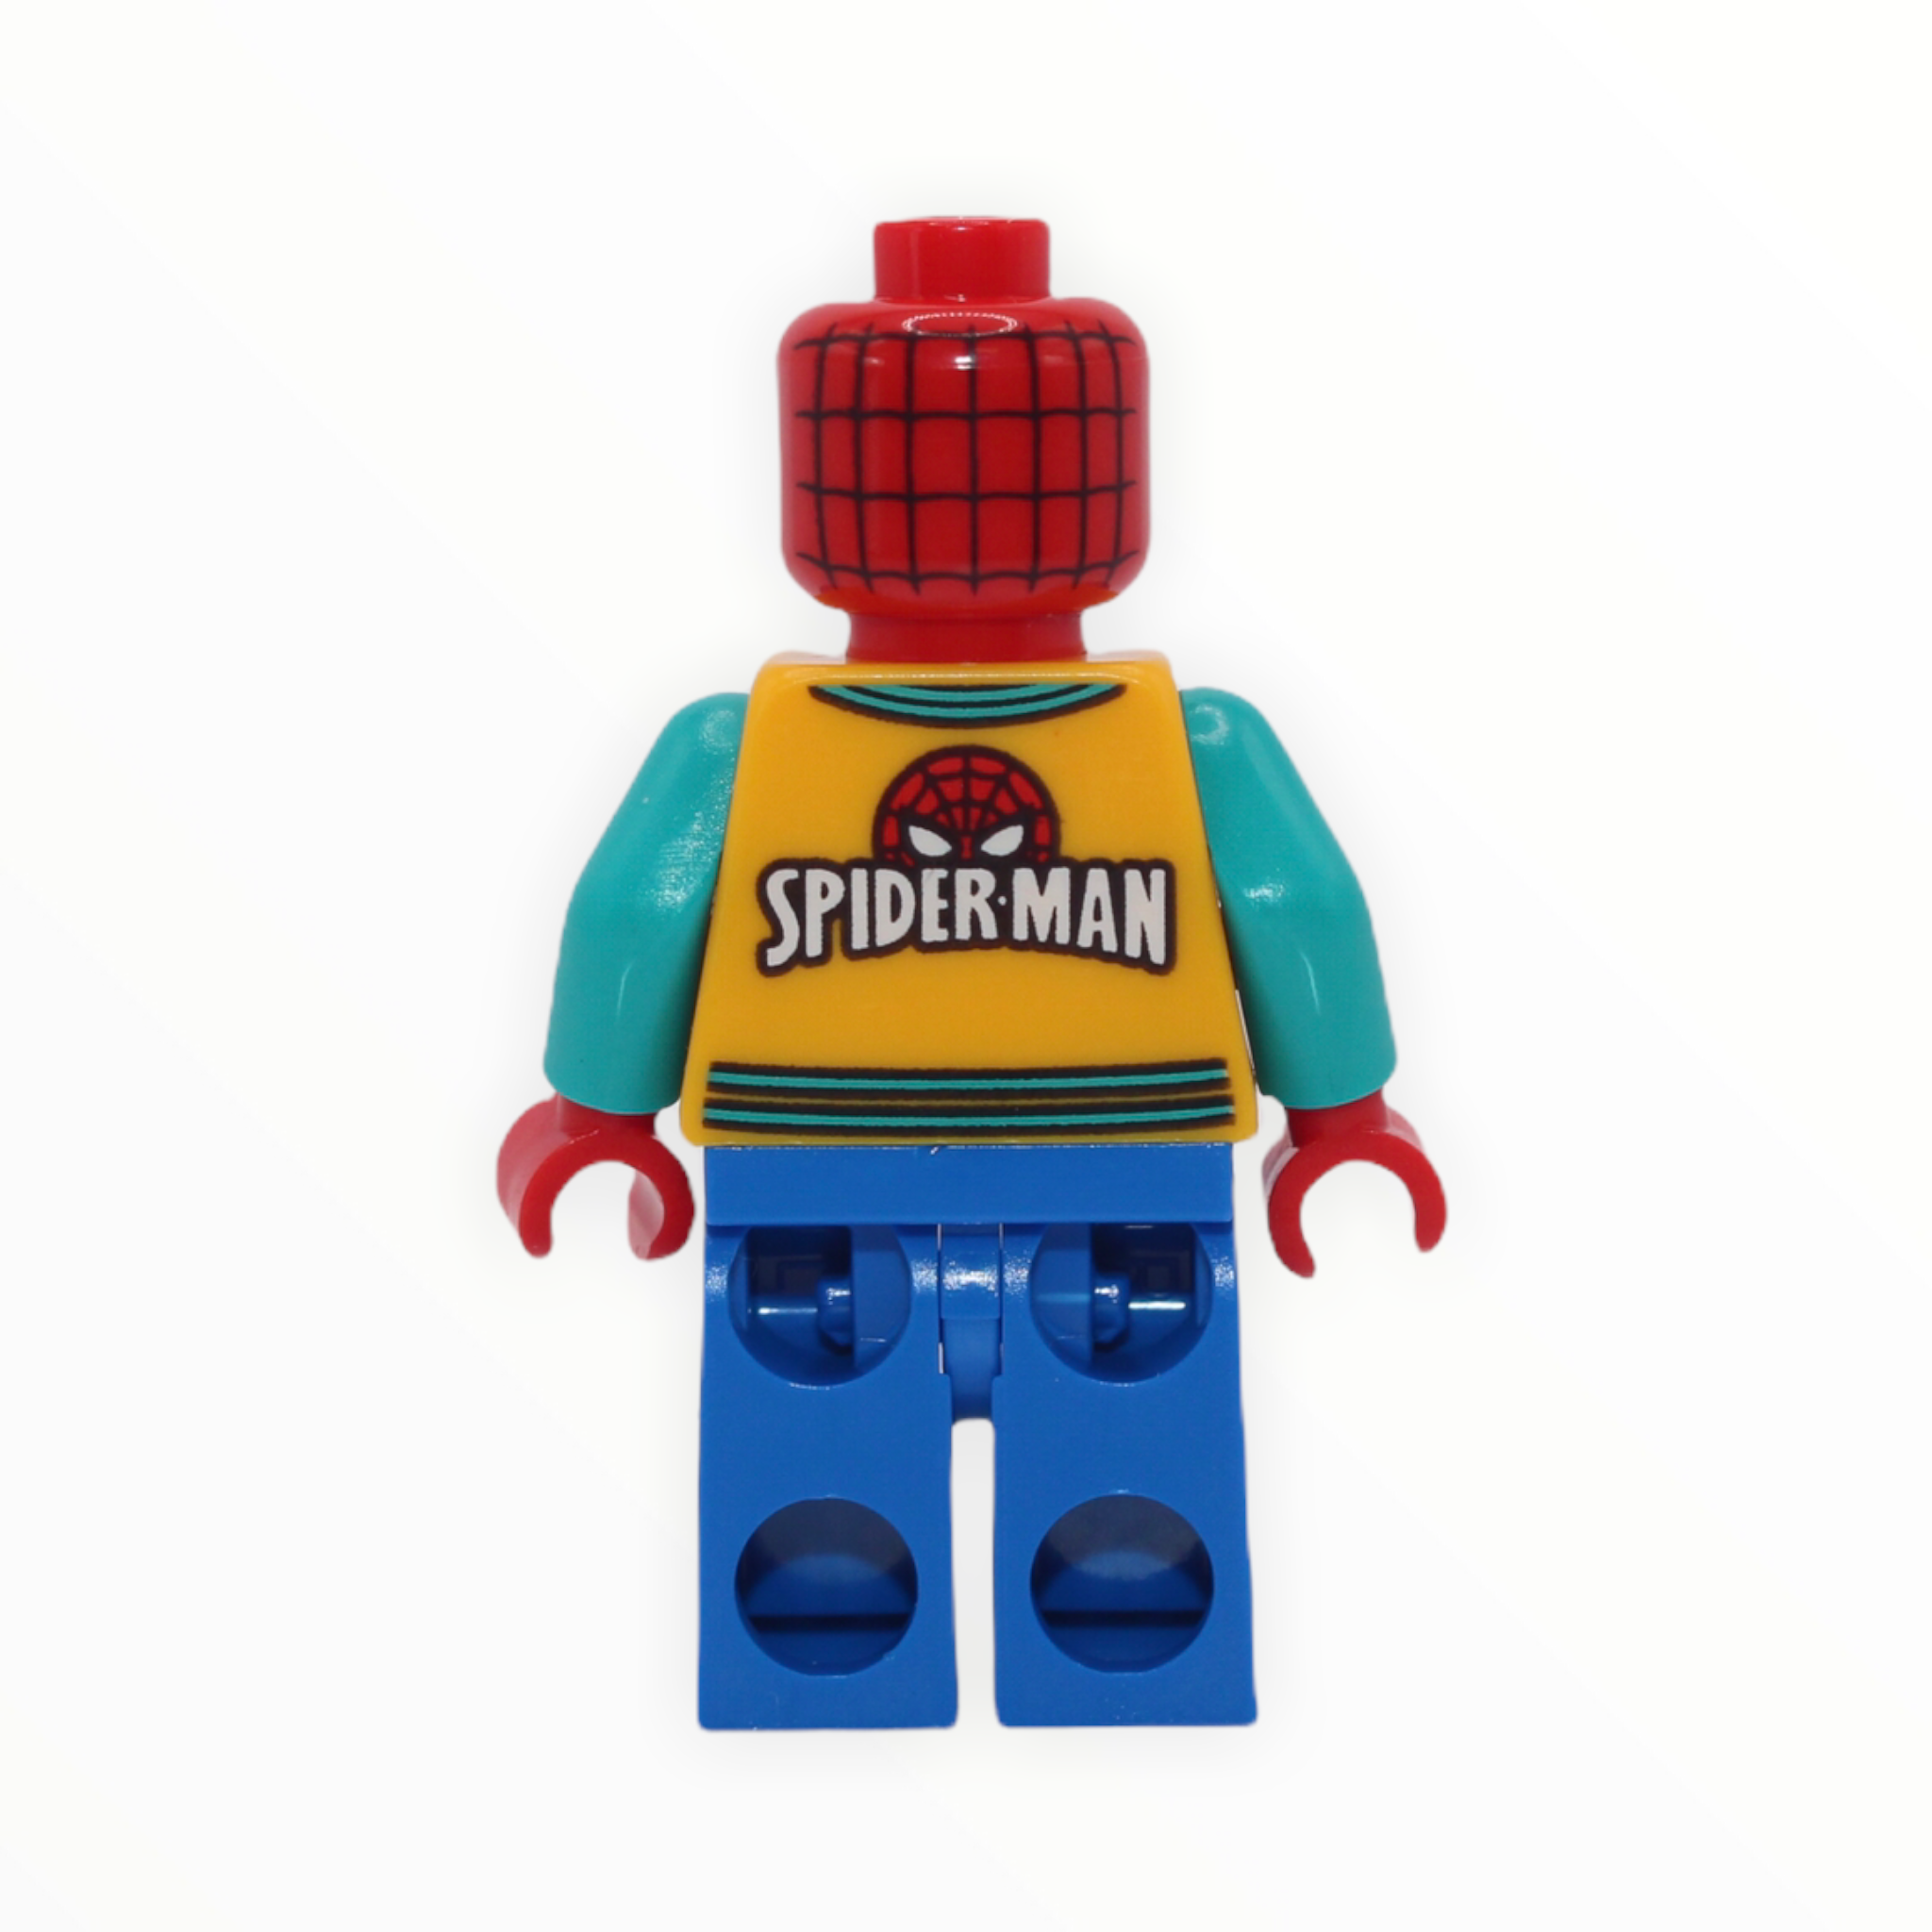 Spider-Man (letter jacket)